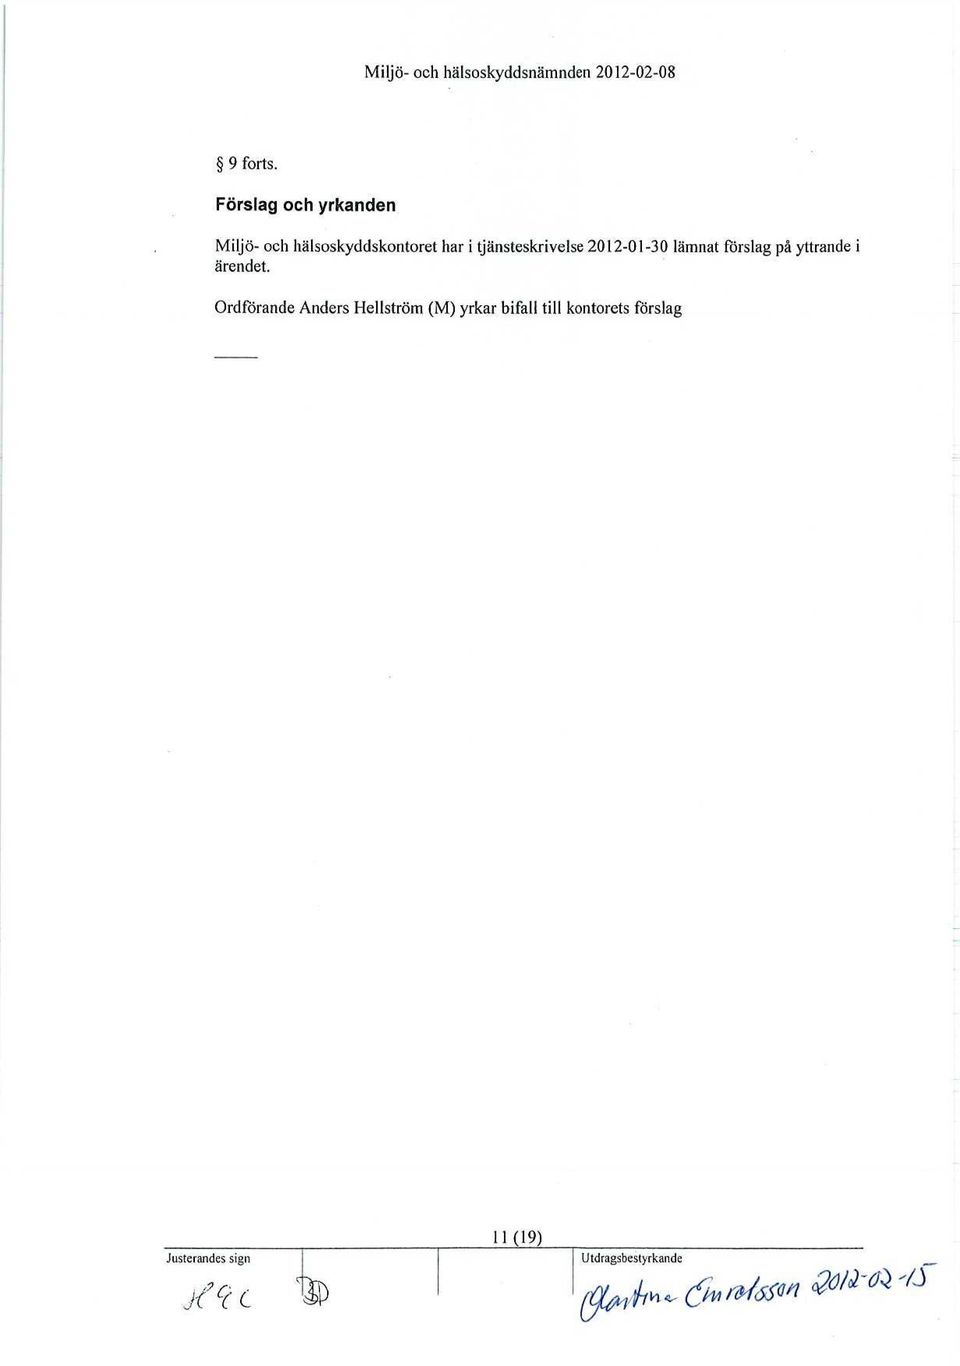 tjänsteskrivelse 2012-01-30 lämnat förslag på yttrande i ärendet.